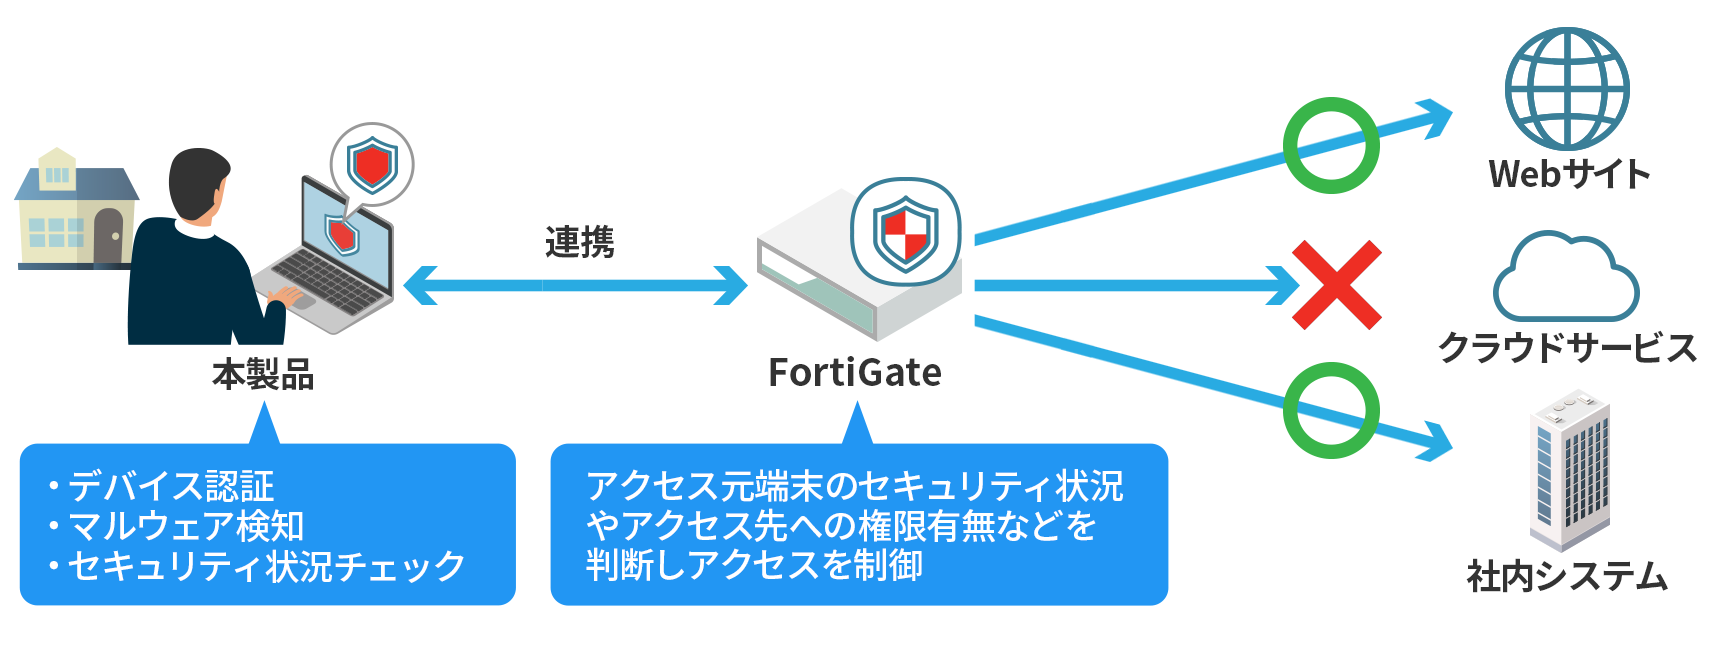 FortiGateと連携するゼロトラスト向けクライアント